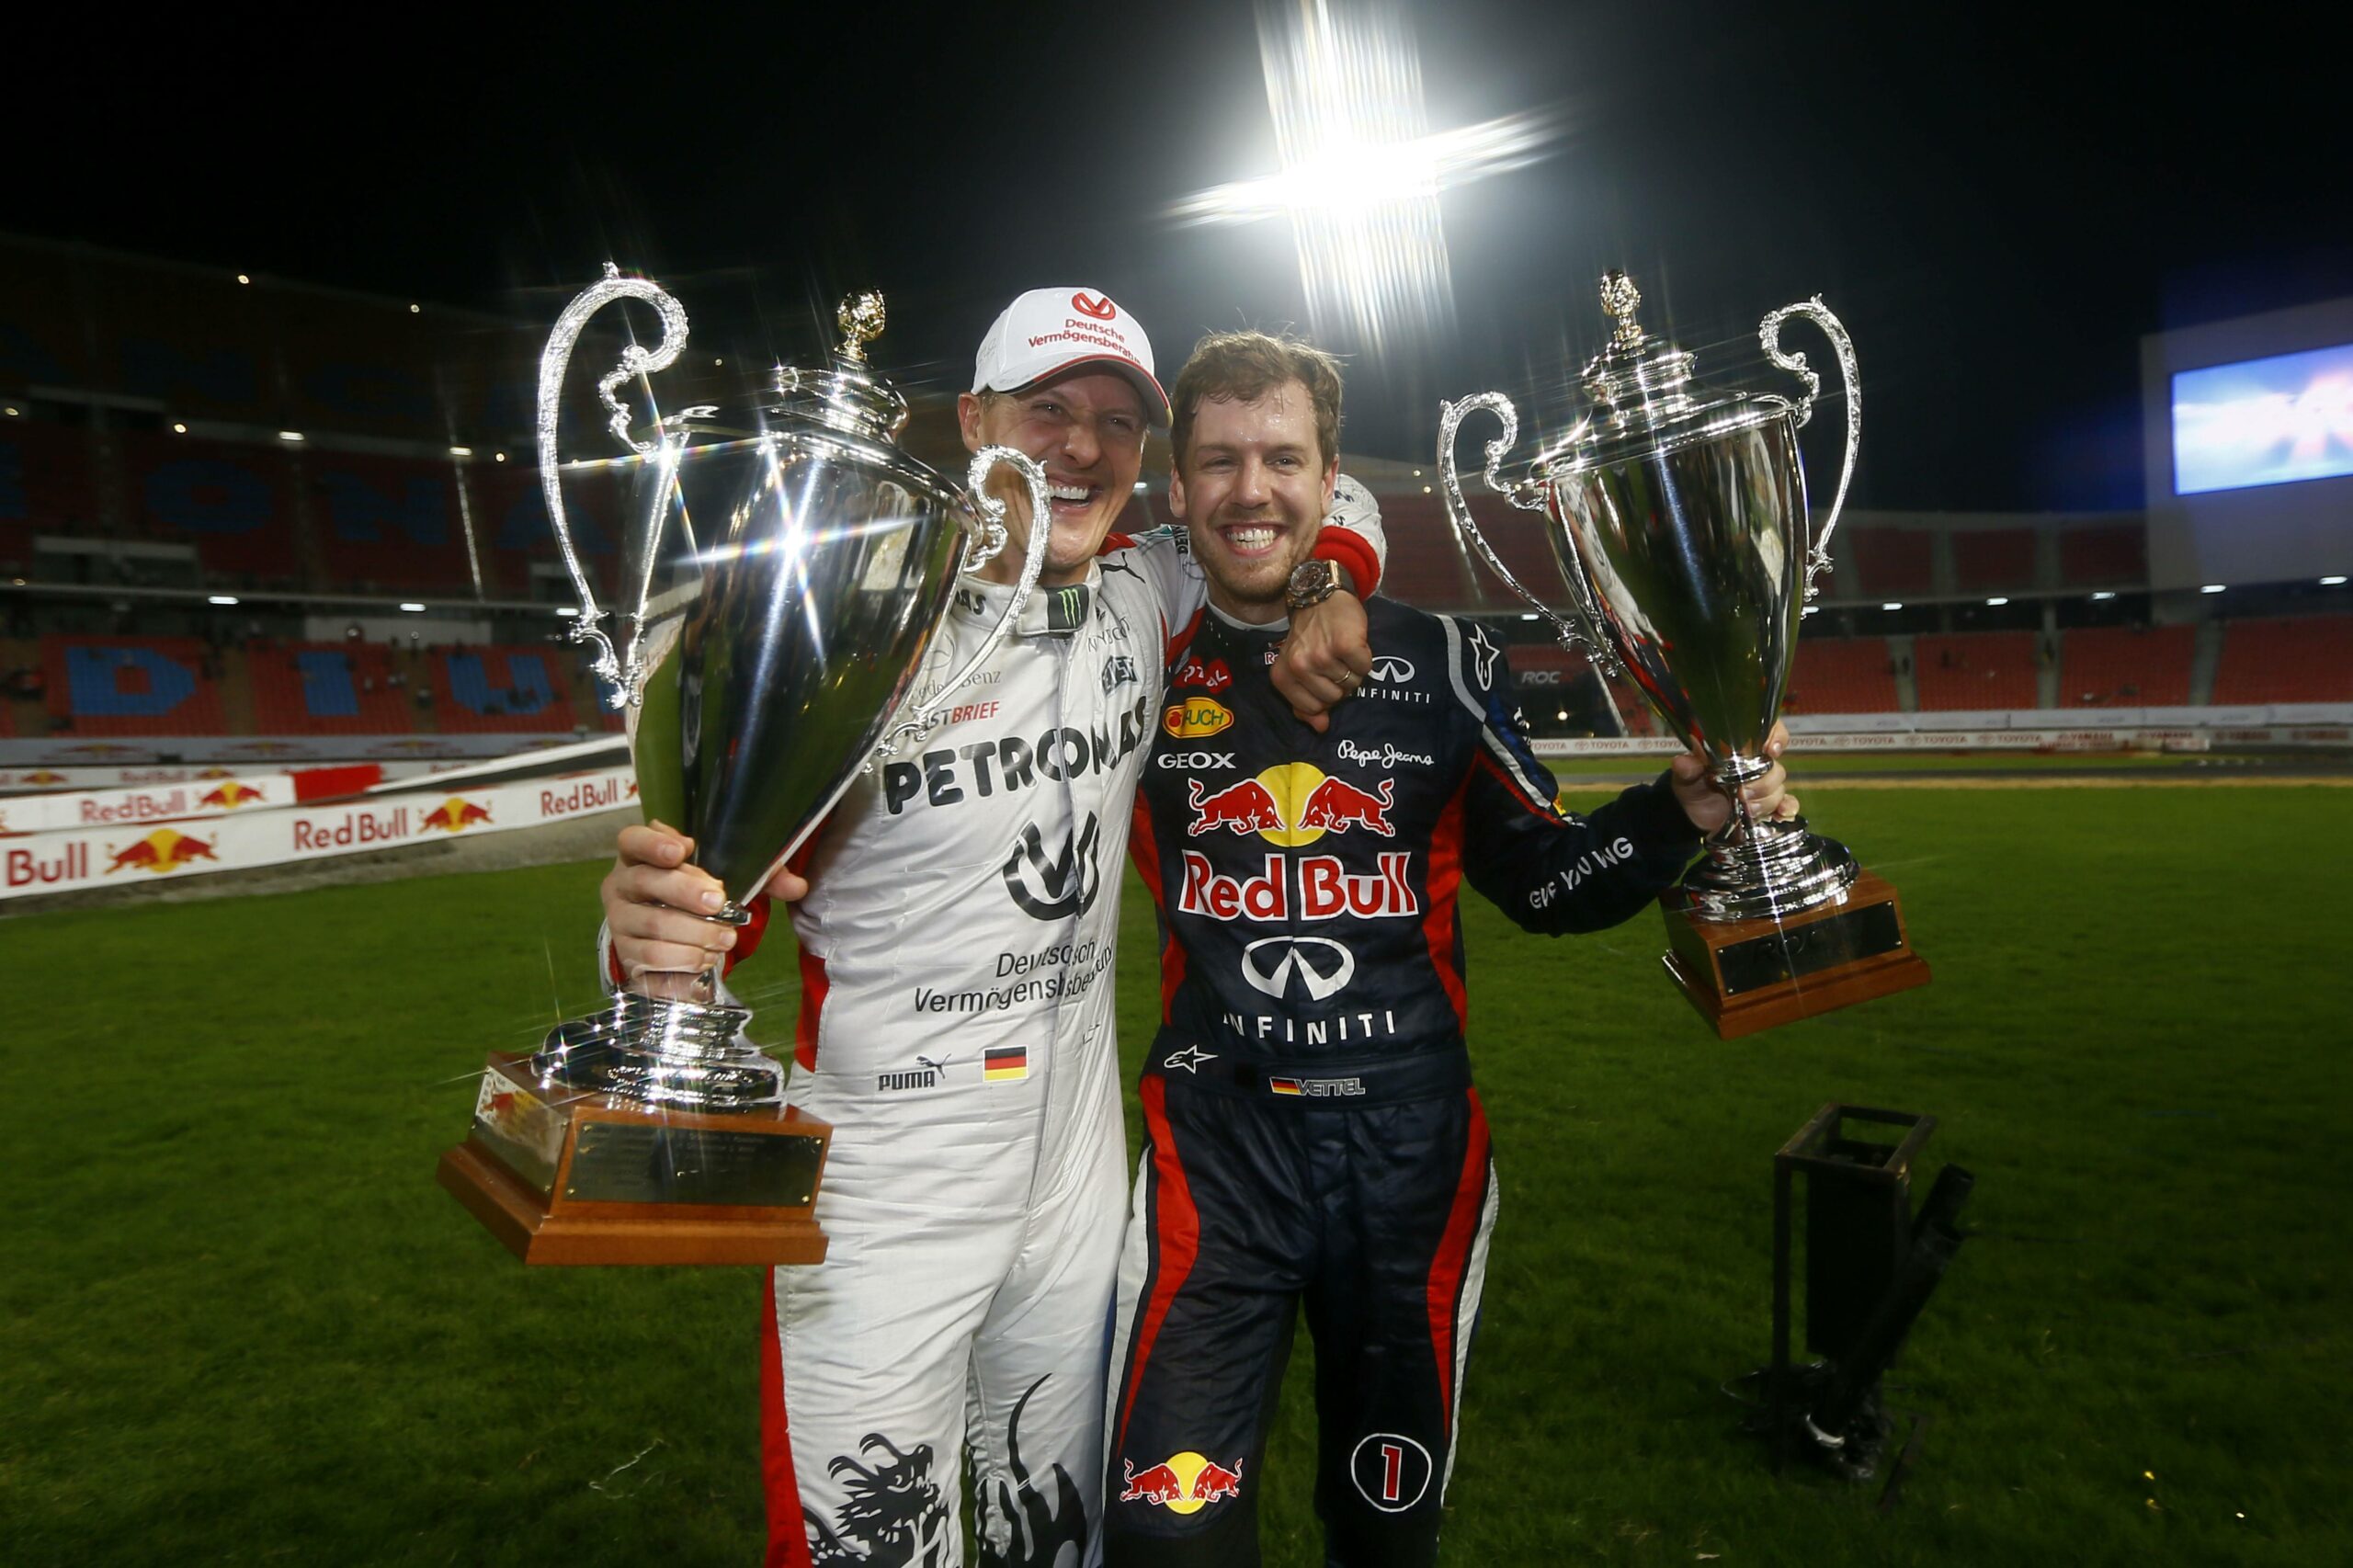 Michael Schumacher und Sebastian Vettel in Rennanzug und Pokal in der Hand